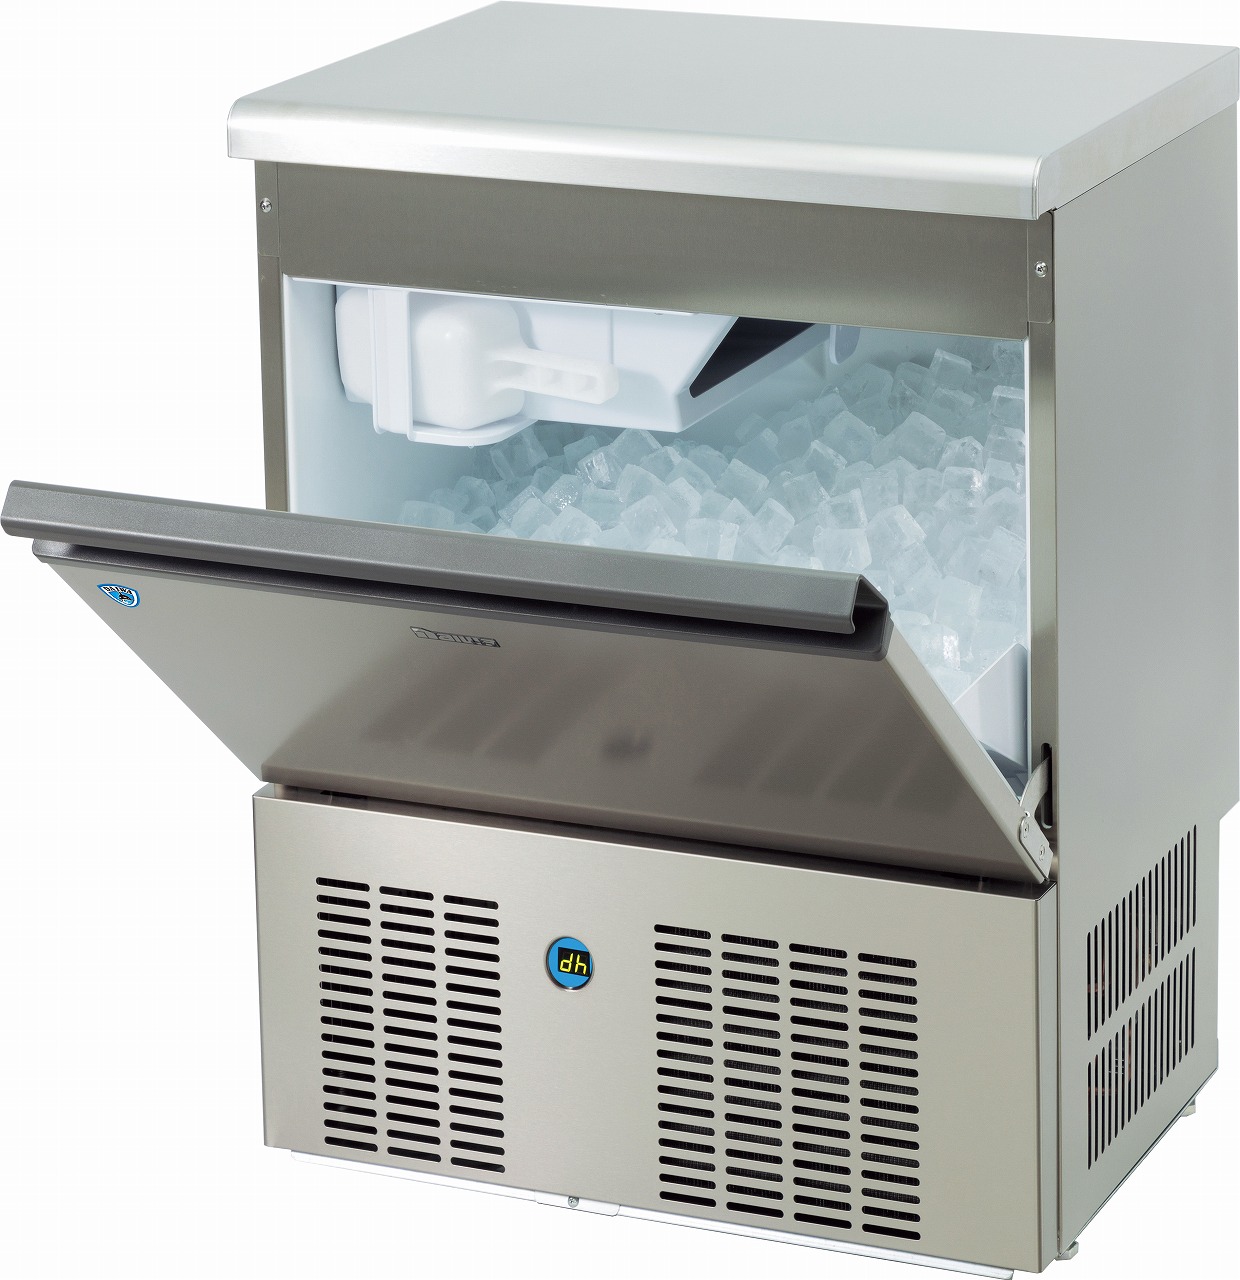 バーチカルタイプ製氷機 LMEシリーズ | 製氷機 | 製品情報 | 大和冷機